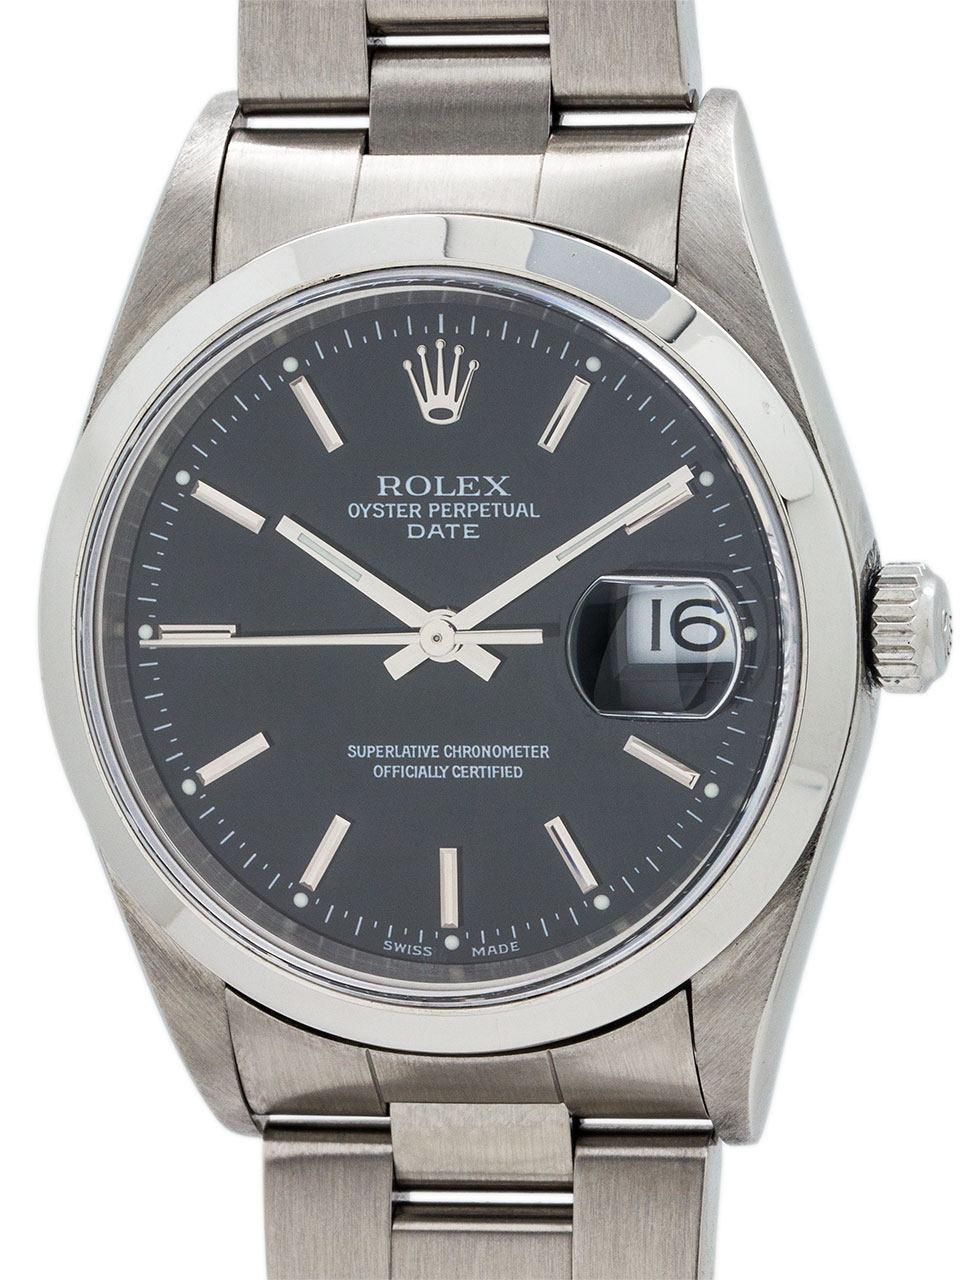 Rolex Oyster Perpetual Date ref 15200 